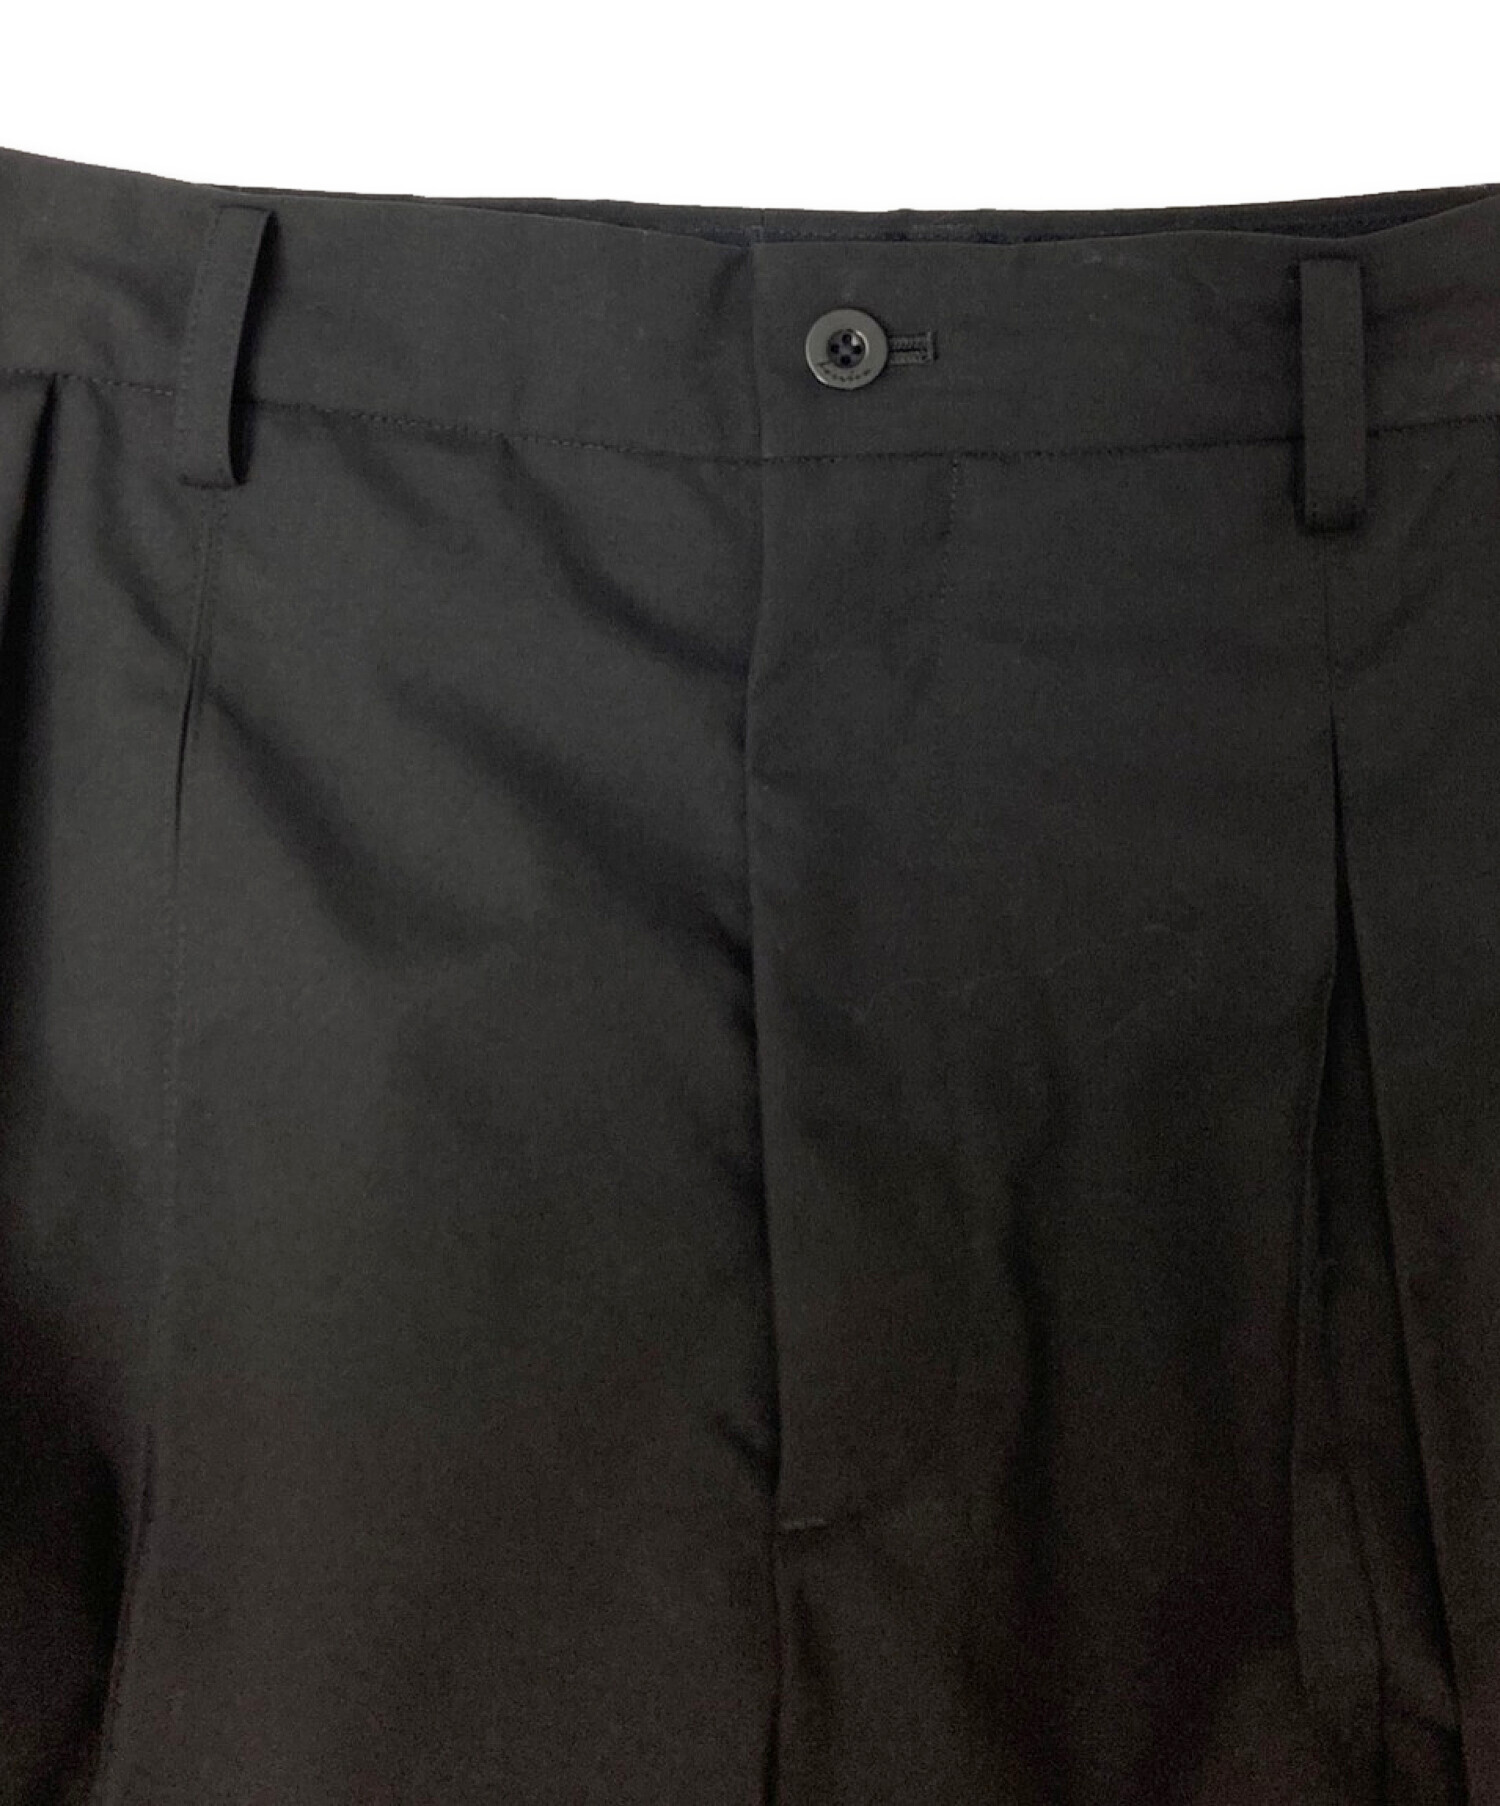 IRENISA (イレニサ) ダブルプリーツセンタープリーツパンツ / DOUBLE CENTER PLEATS PANTS ブラック サイズ:2